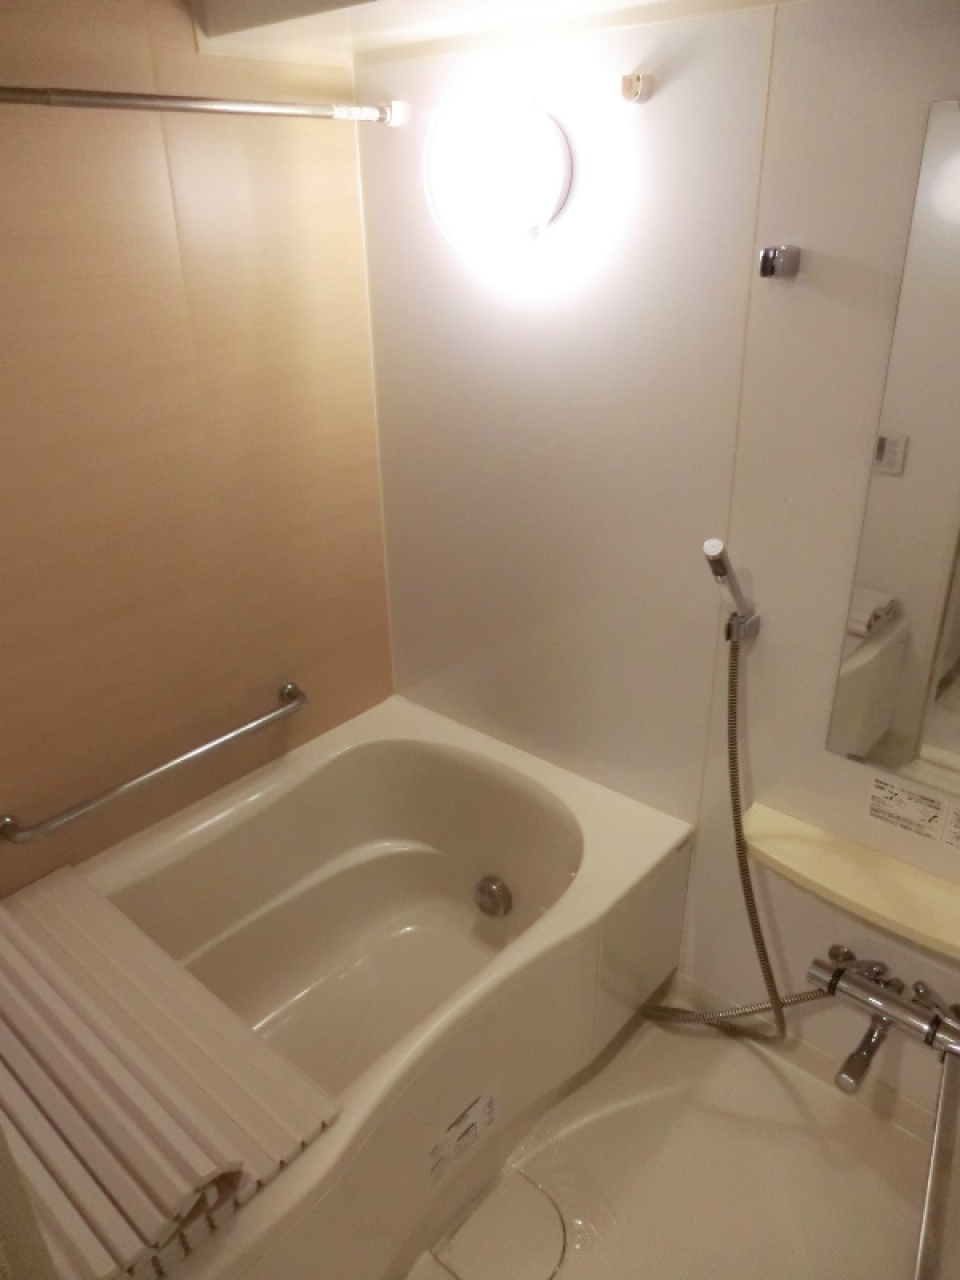 ナチュラルなパネルが設置されている浴室。※参考写真